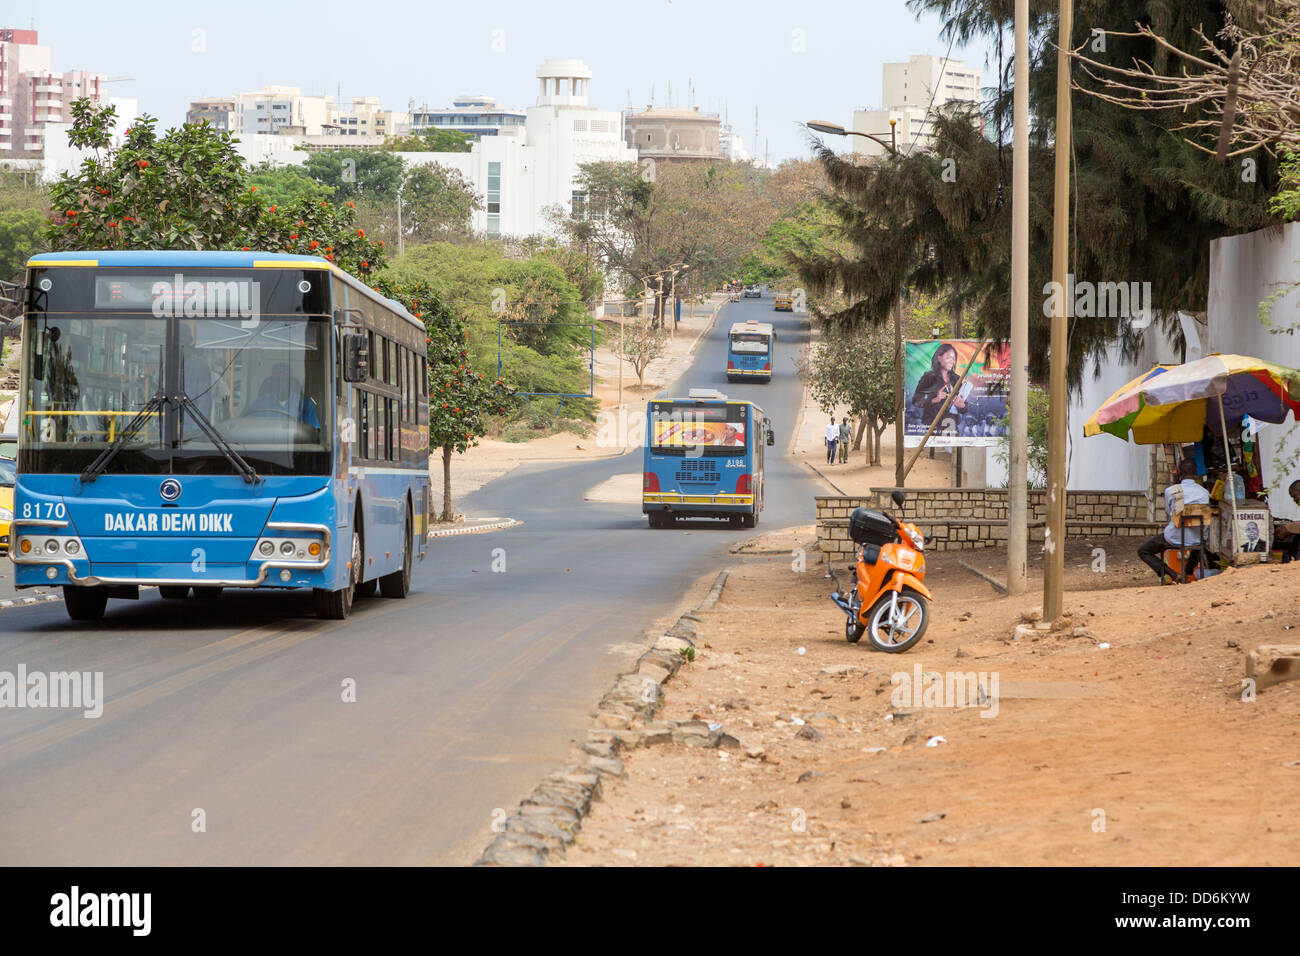 Dakar, Sénégal. Les transports publics, bus municipaux. Banque D'Images